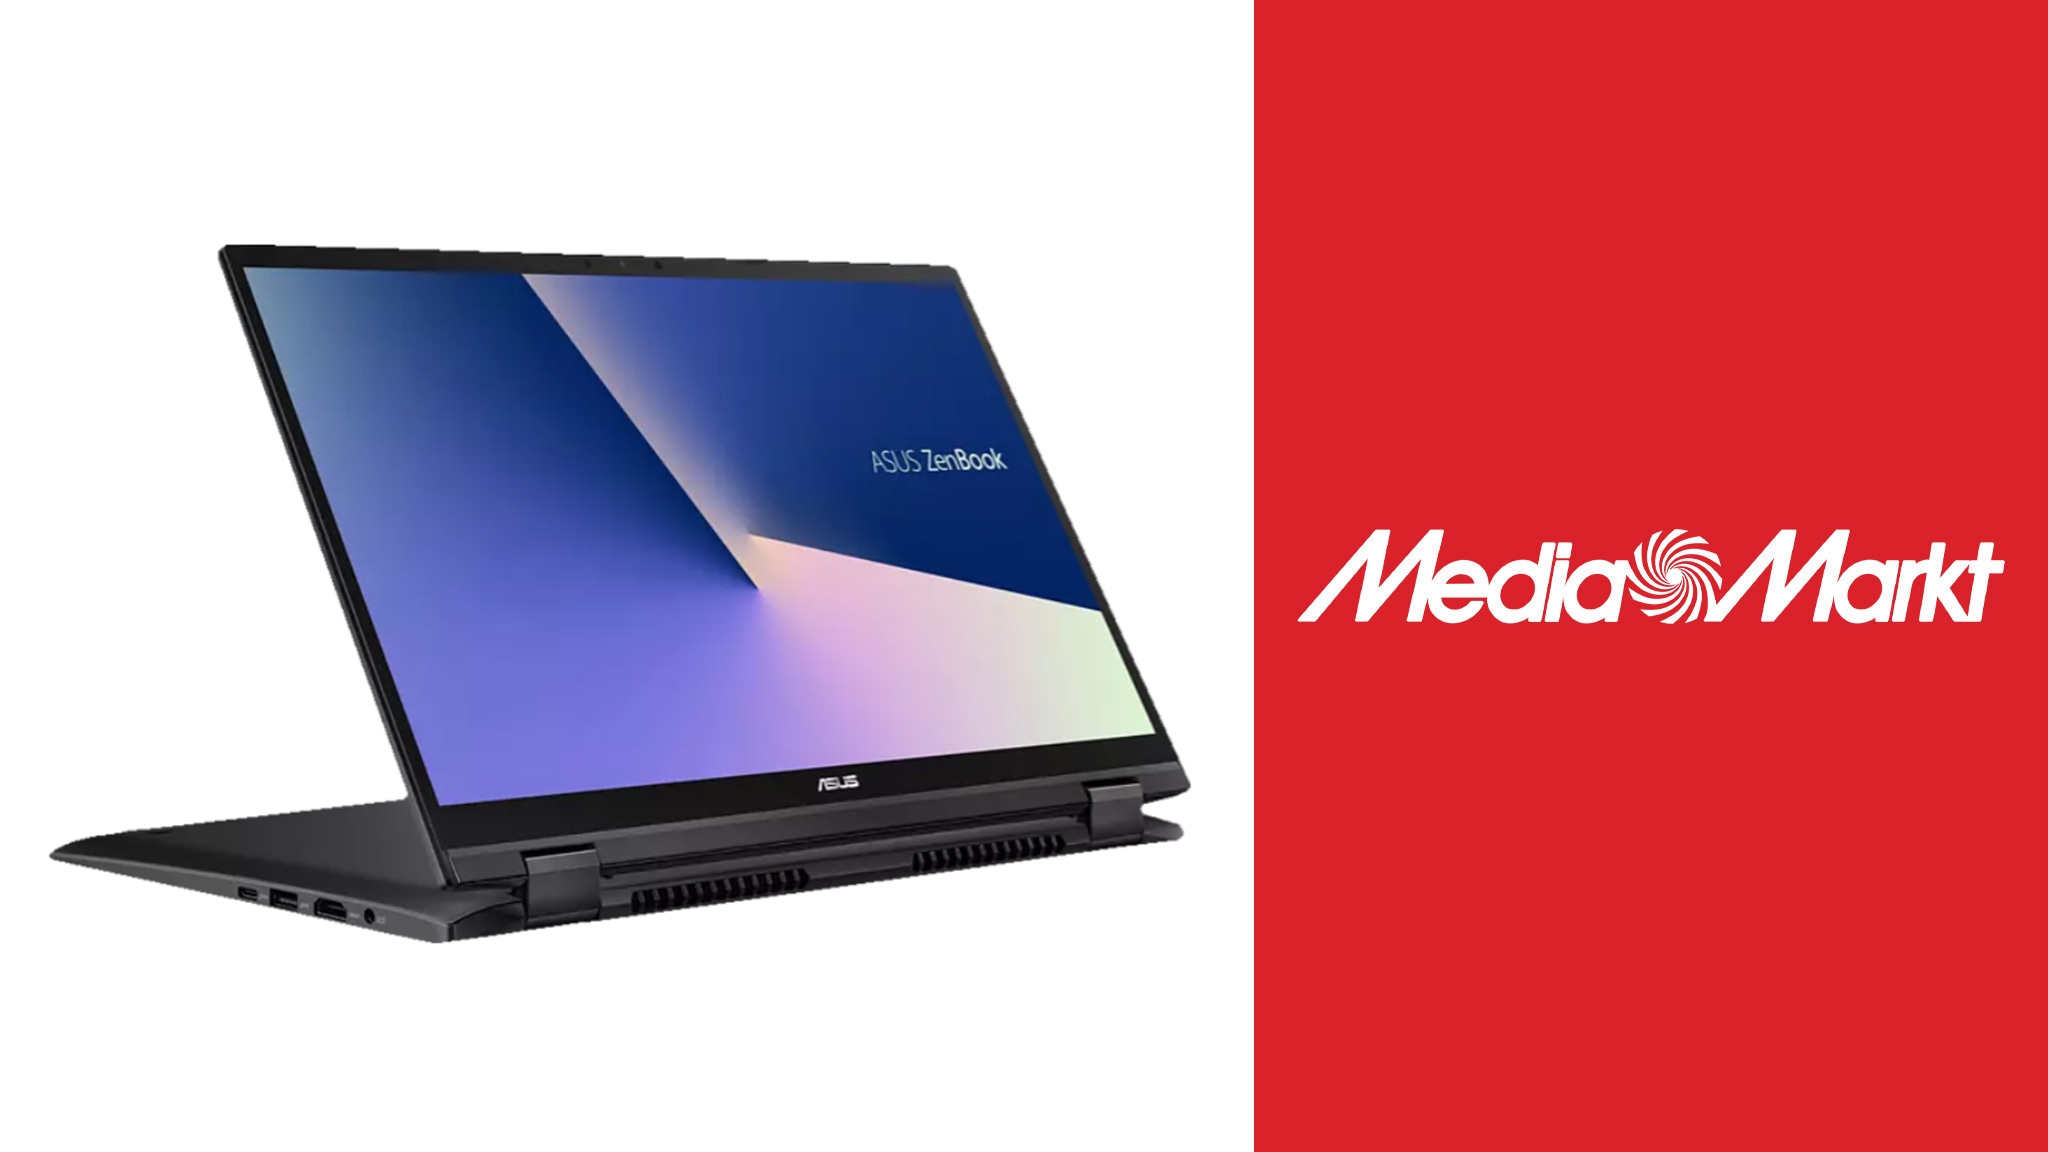 Típicamente melodía élite Notebook bei Media Markt: Asus ZenBook 41 Prozent günstiger kaufen -  COMPUTER BILD